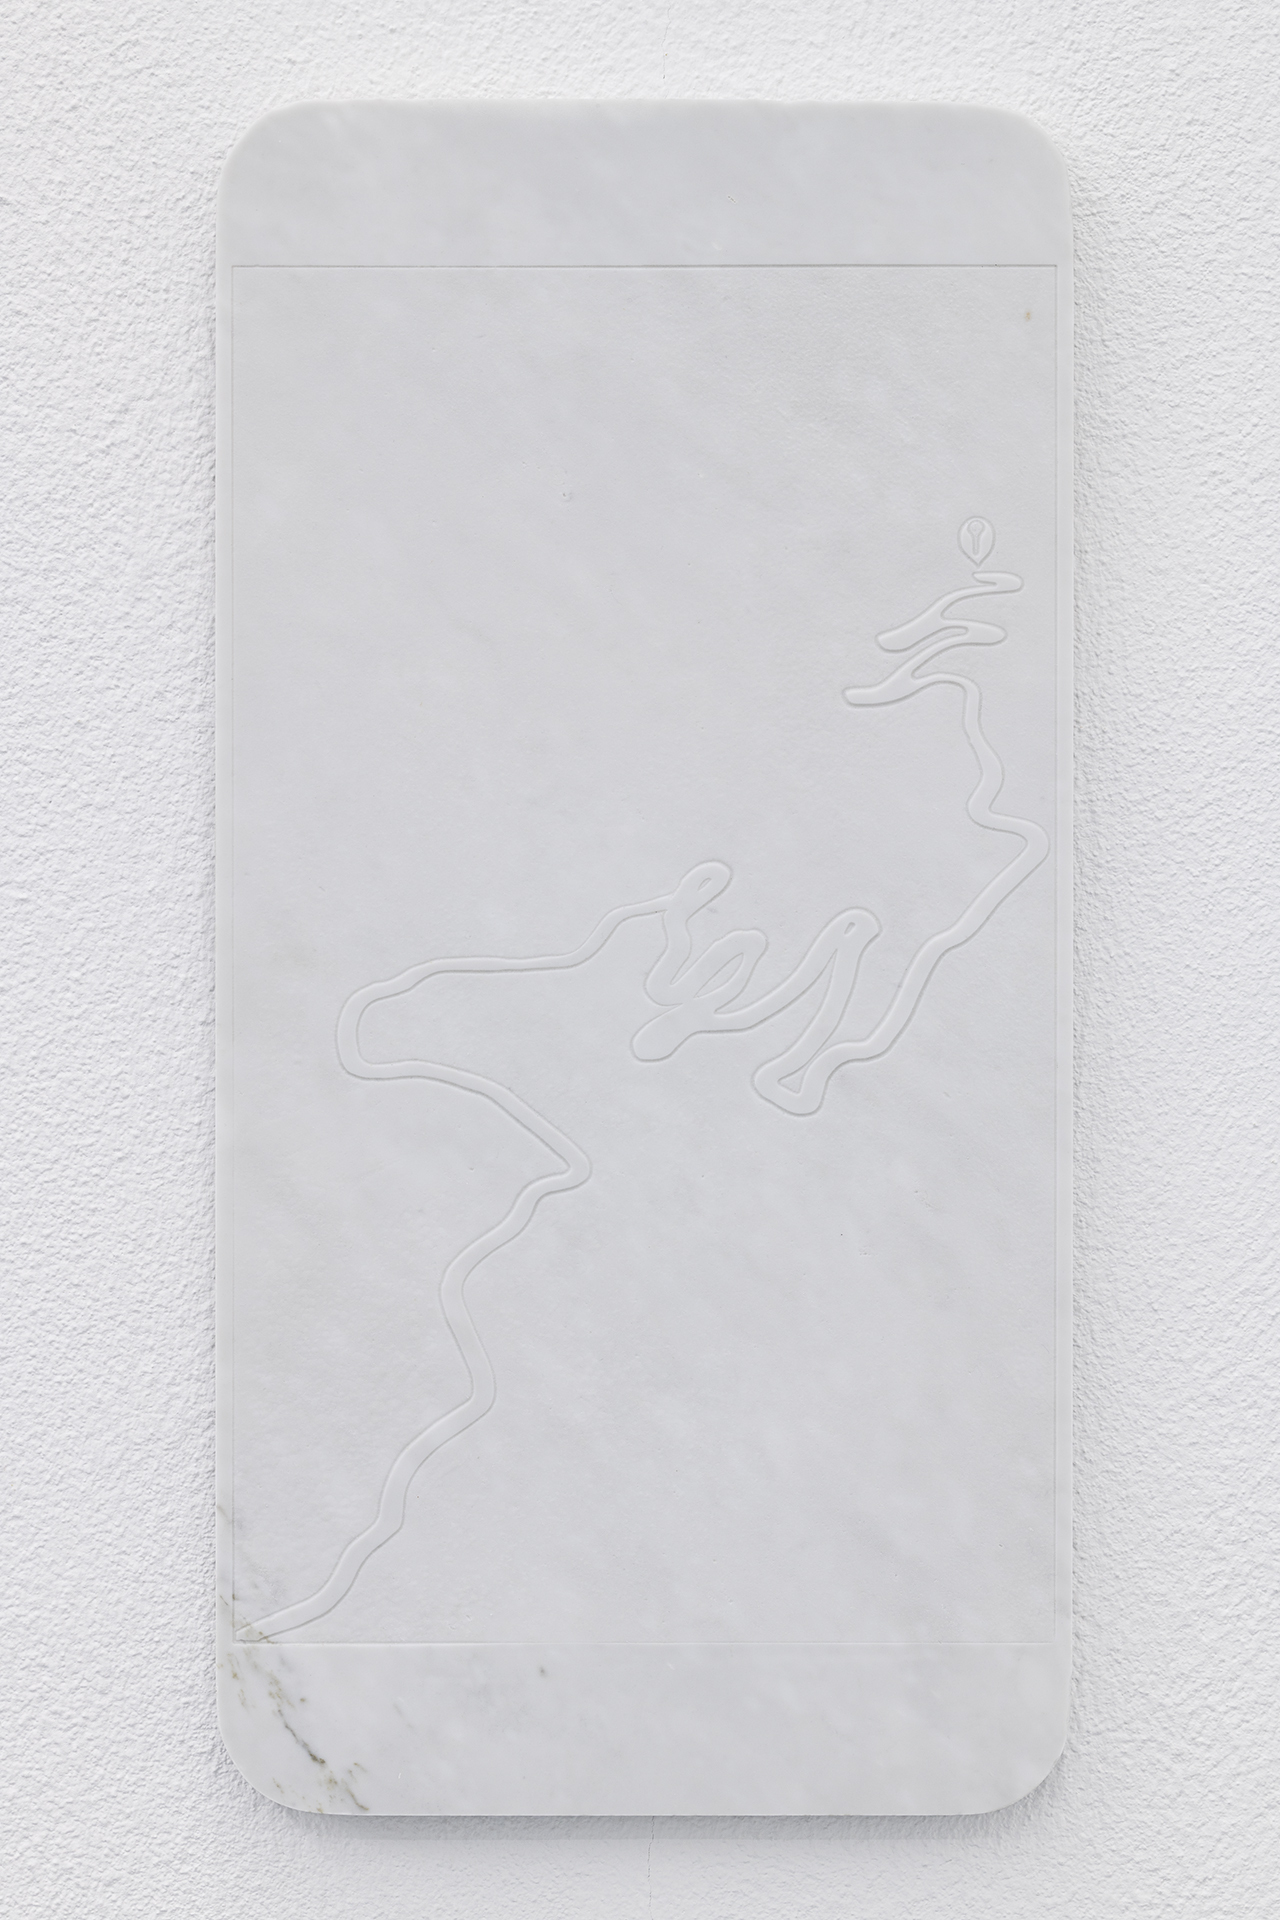 Lukas Liese, On Route nr. 1, 2021, Carrara Marble, 30cm x 60cm x 2cm.